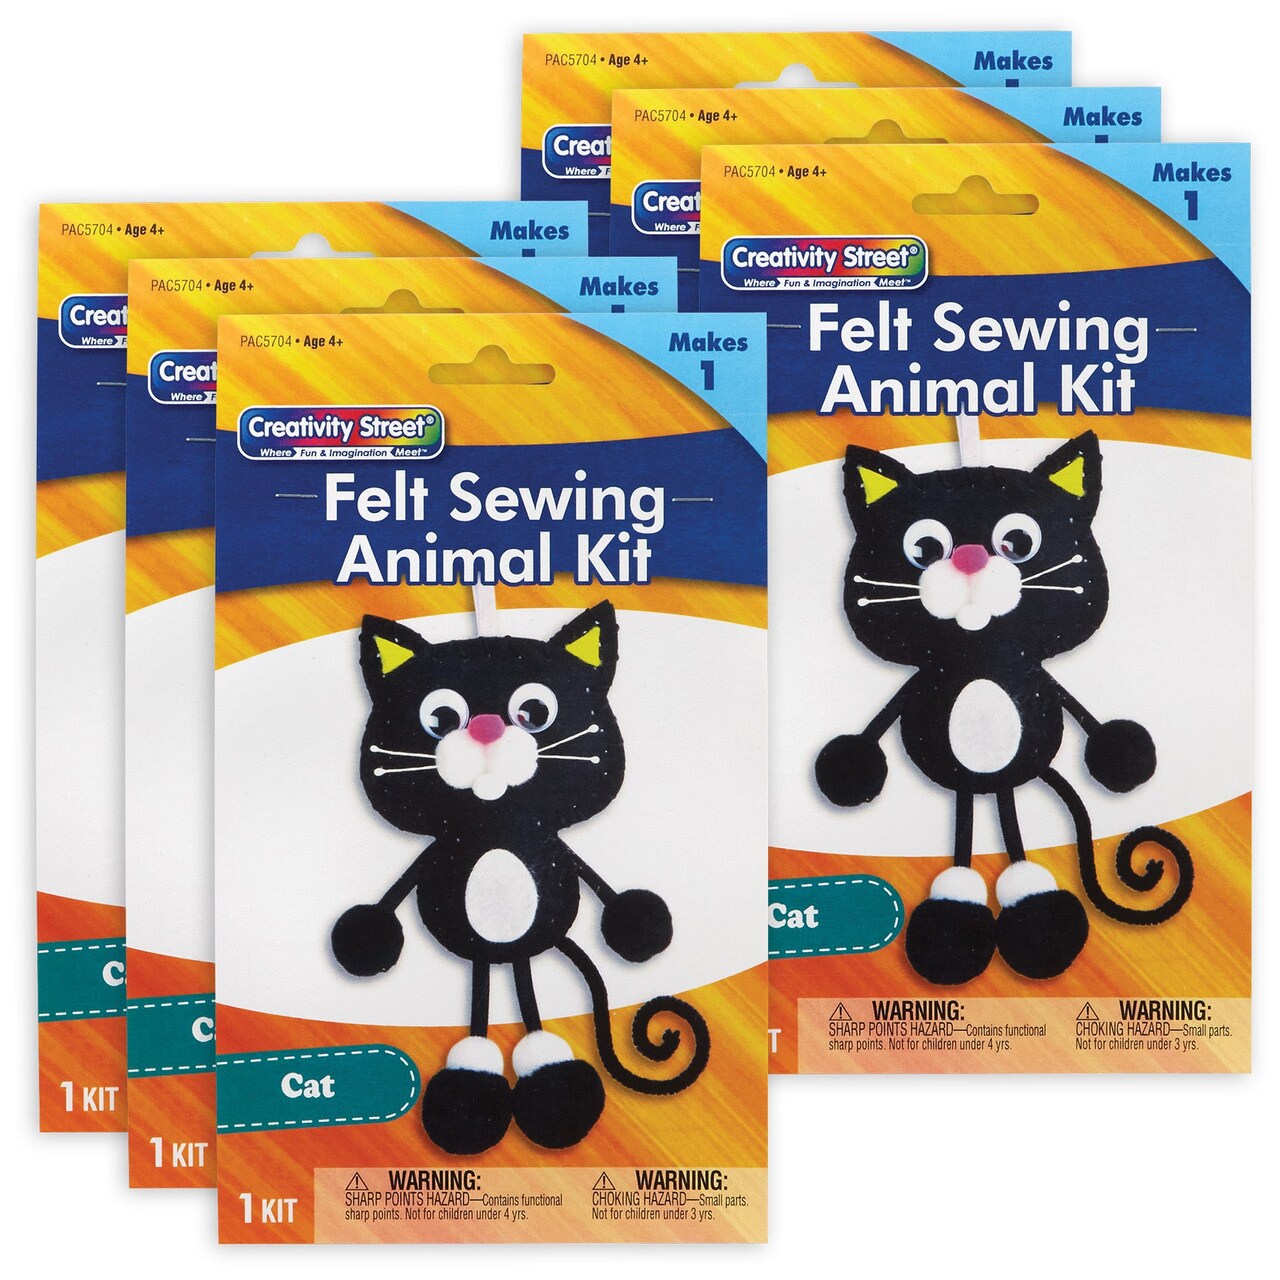 Felt Sewing Animal Kit, Cat, 4 x 10.25 x 1, 6 Kits